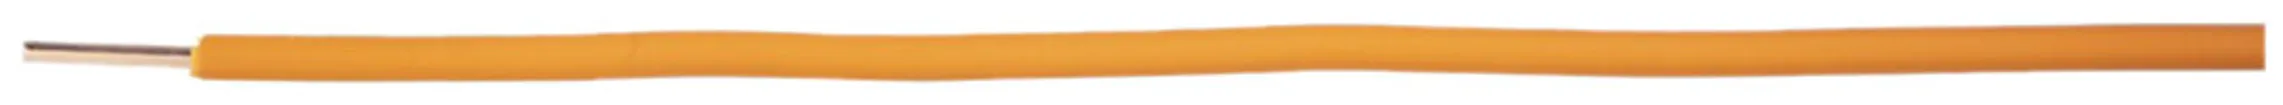 N-Draht H07Z1-U halogenfrei 1.5mm² 450/750V orange Cca 